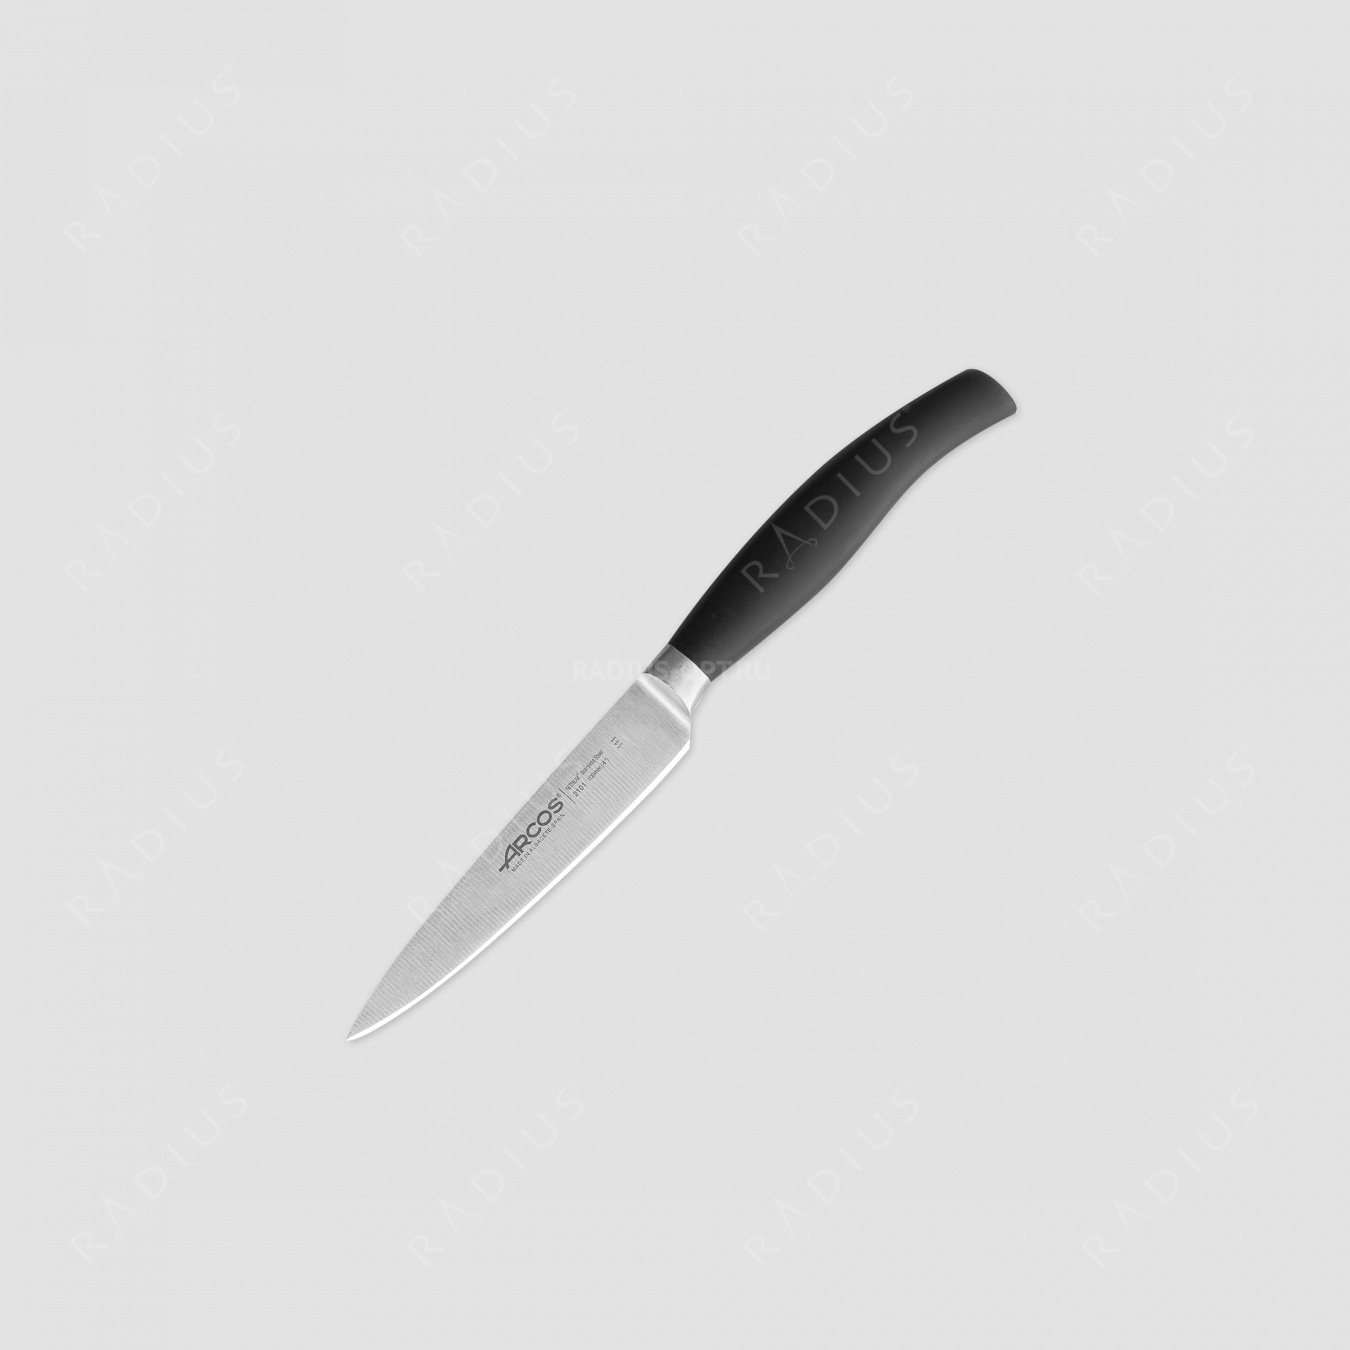 Нож кухонный для чистки, 10 см, серия Clara, ARCOS, Испания